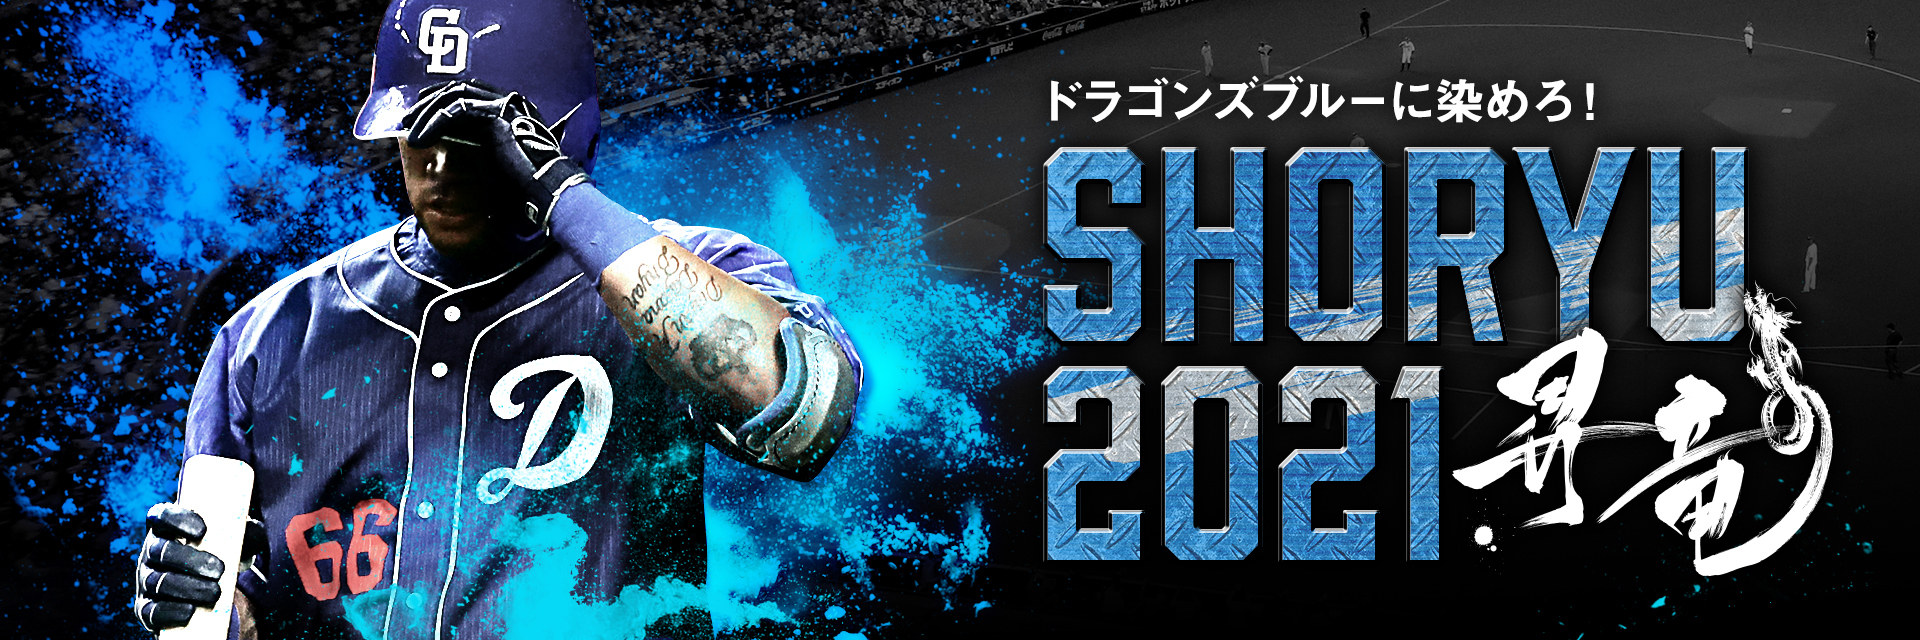 8月21日、22日、9月5日に開催される『SHORYU2021』